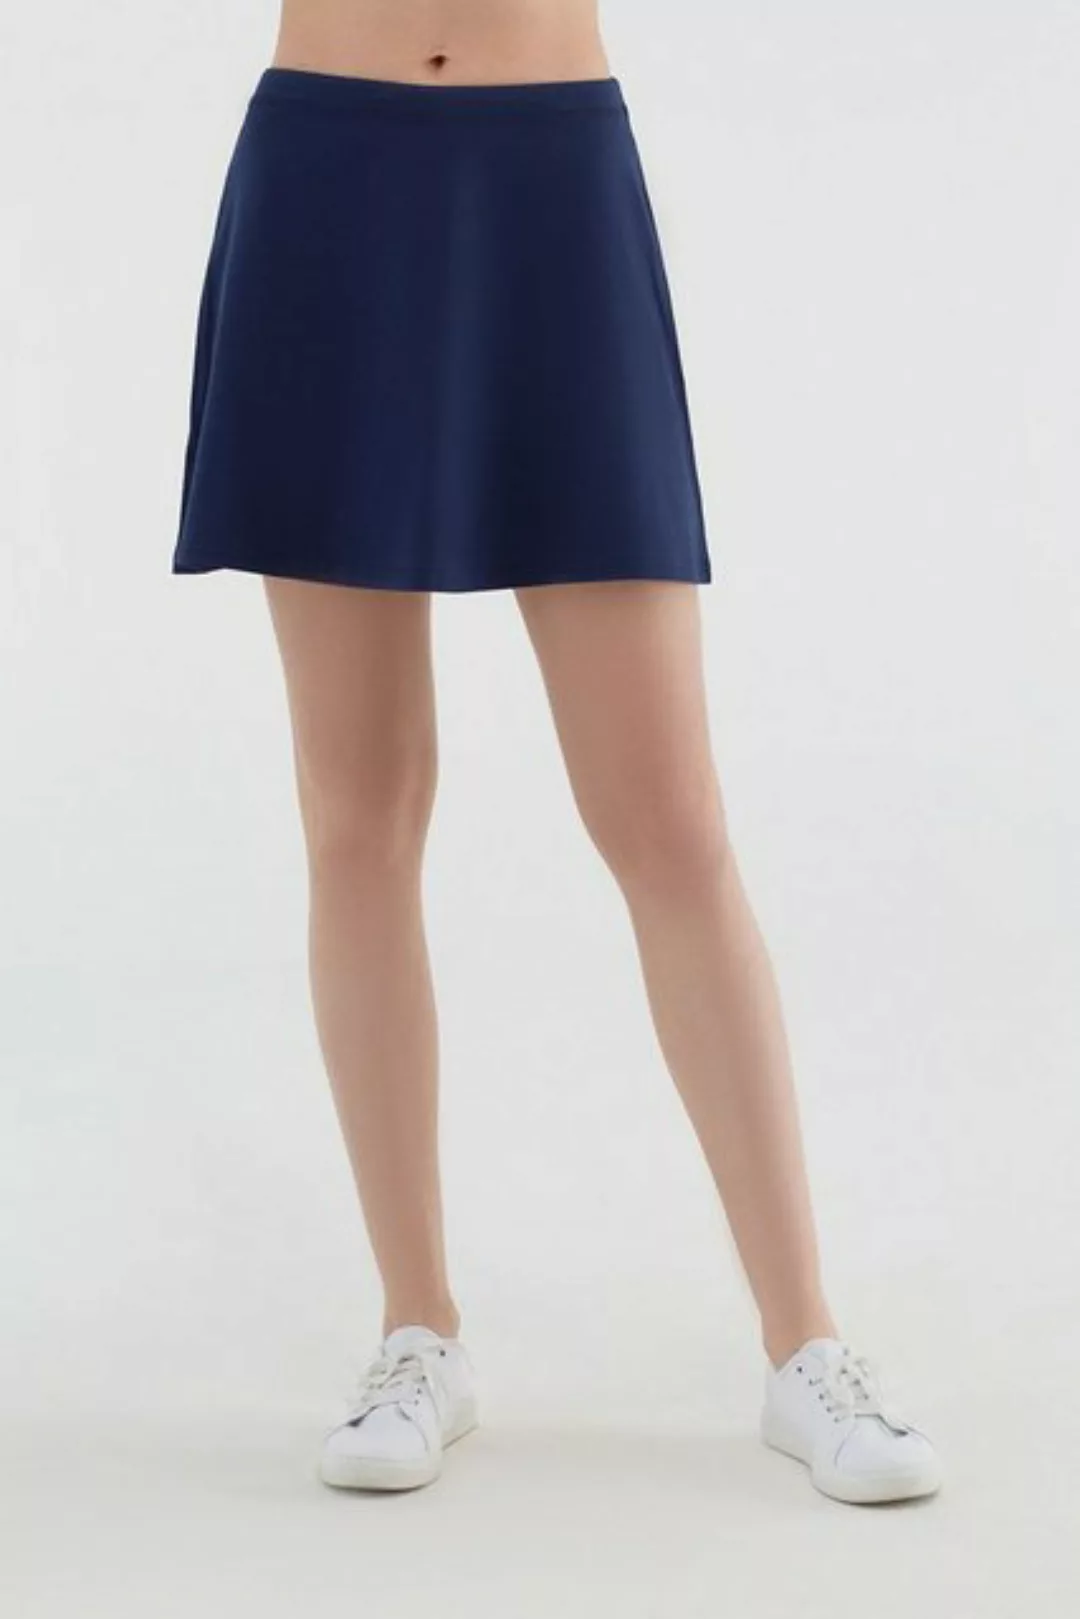 Damen Röcke Bio-baumwolle Rock Kleid günstig online kaufen